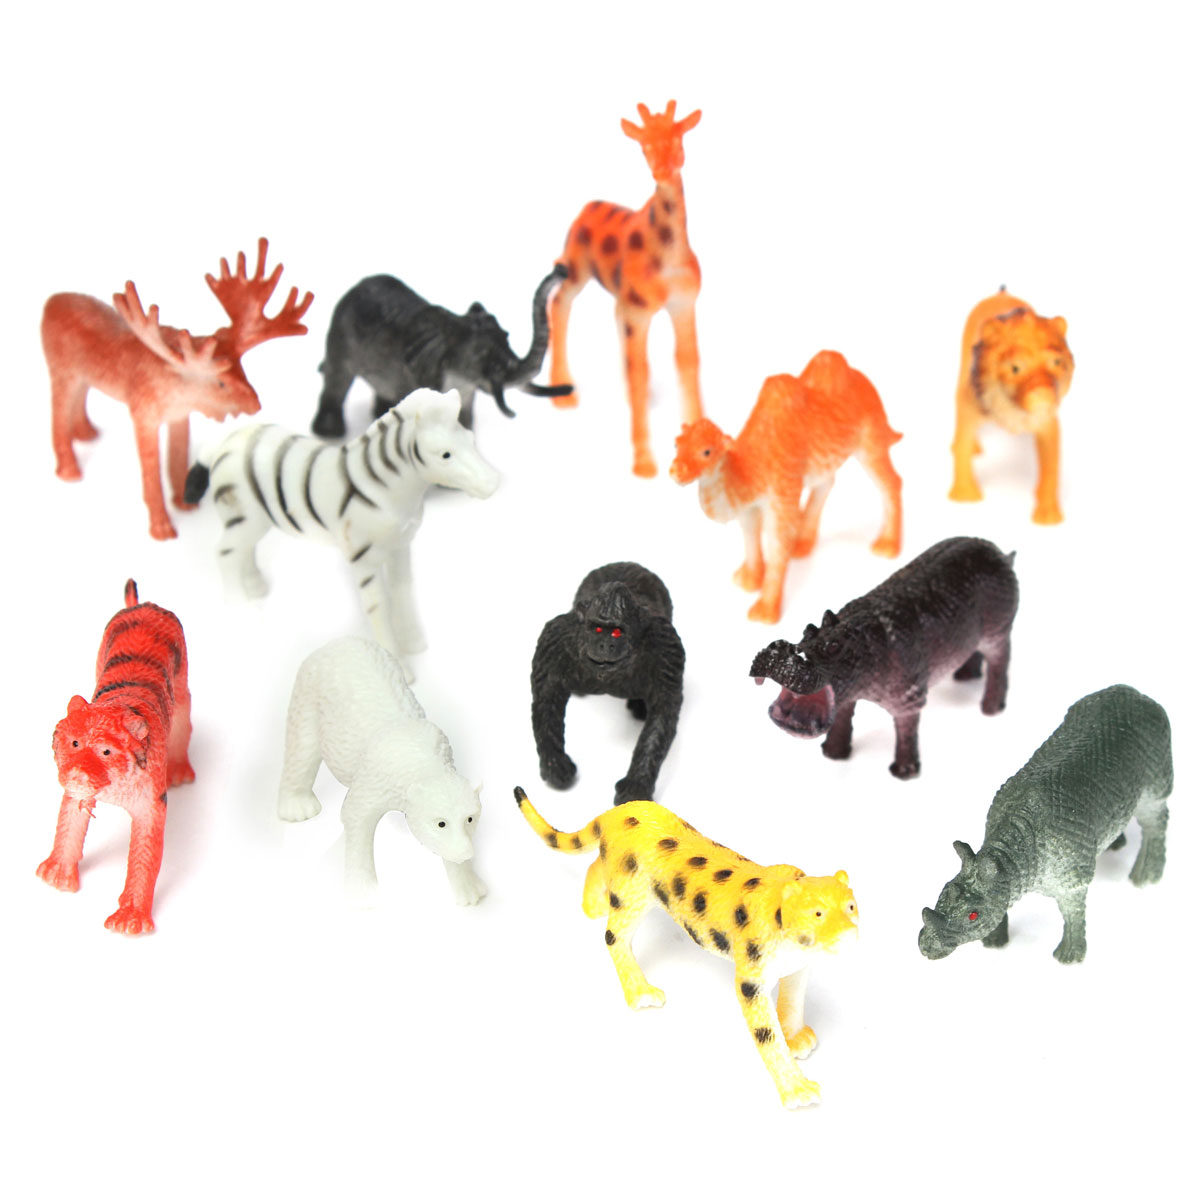 12-Small-plastic-Zoo-Safari-animals-Lion-Tiger-Leopard-Hippo-Giraffe-figures-1021567